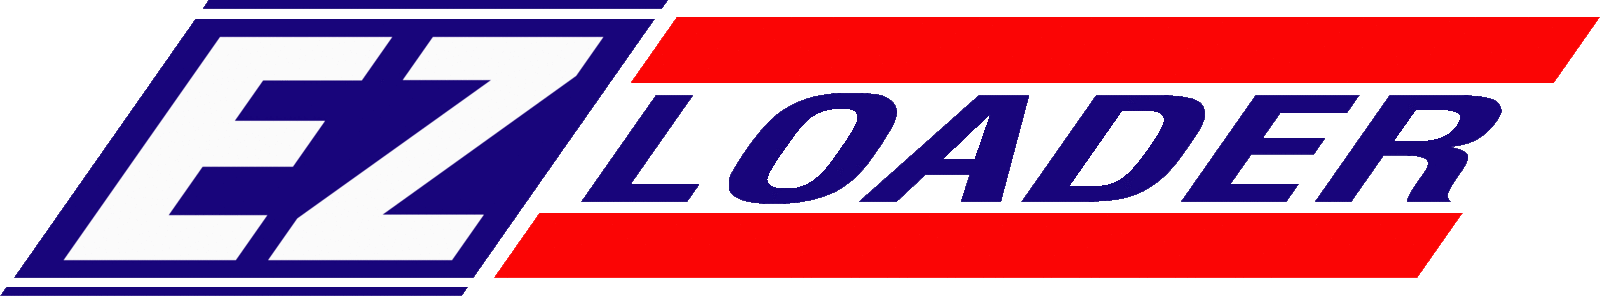 Ez Loader logo